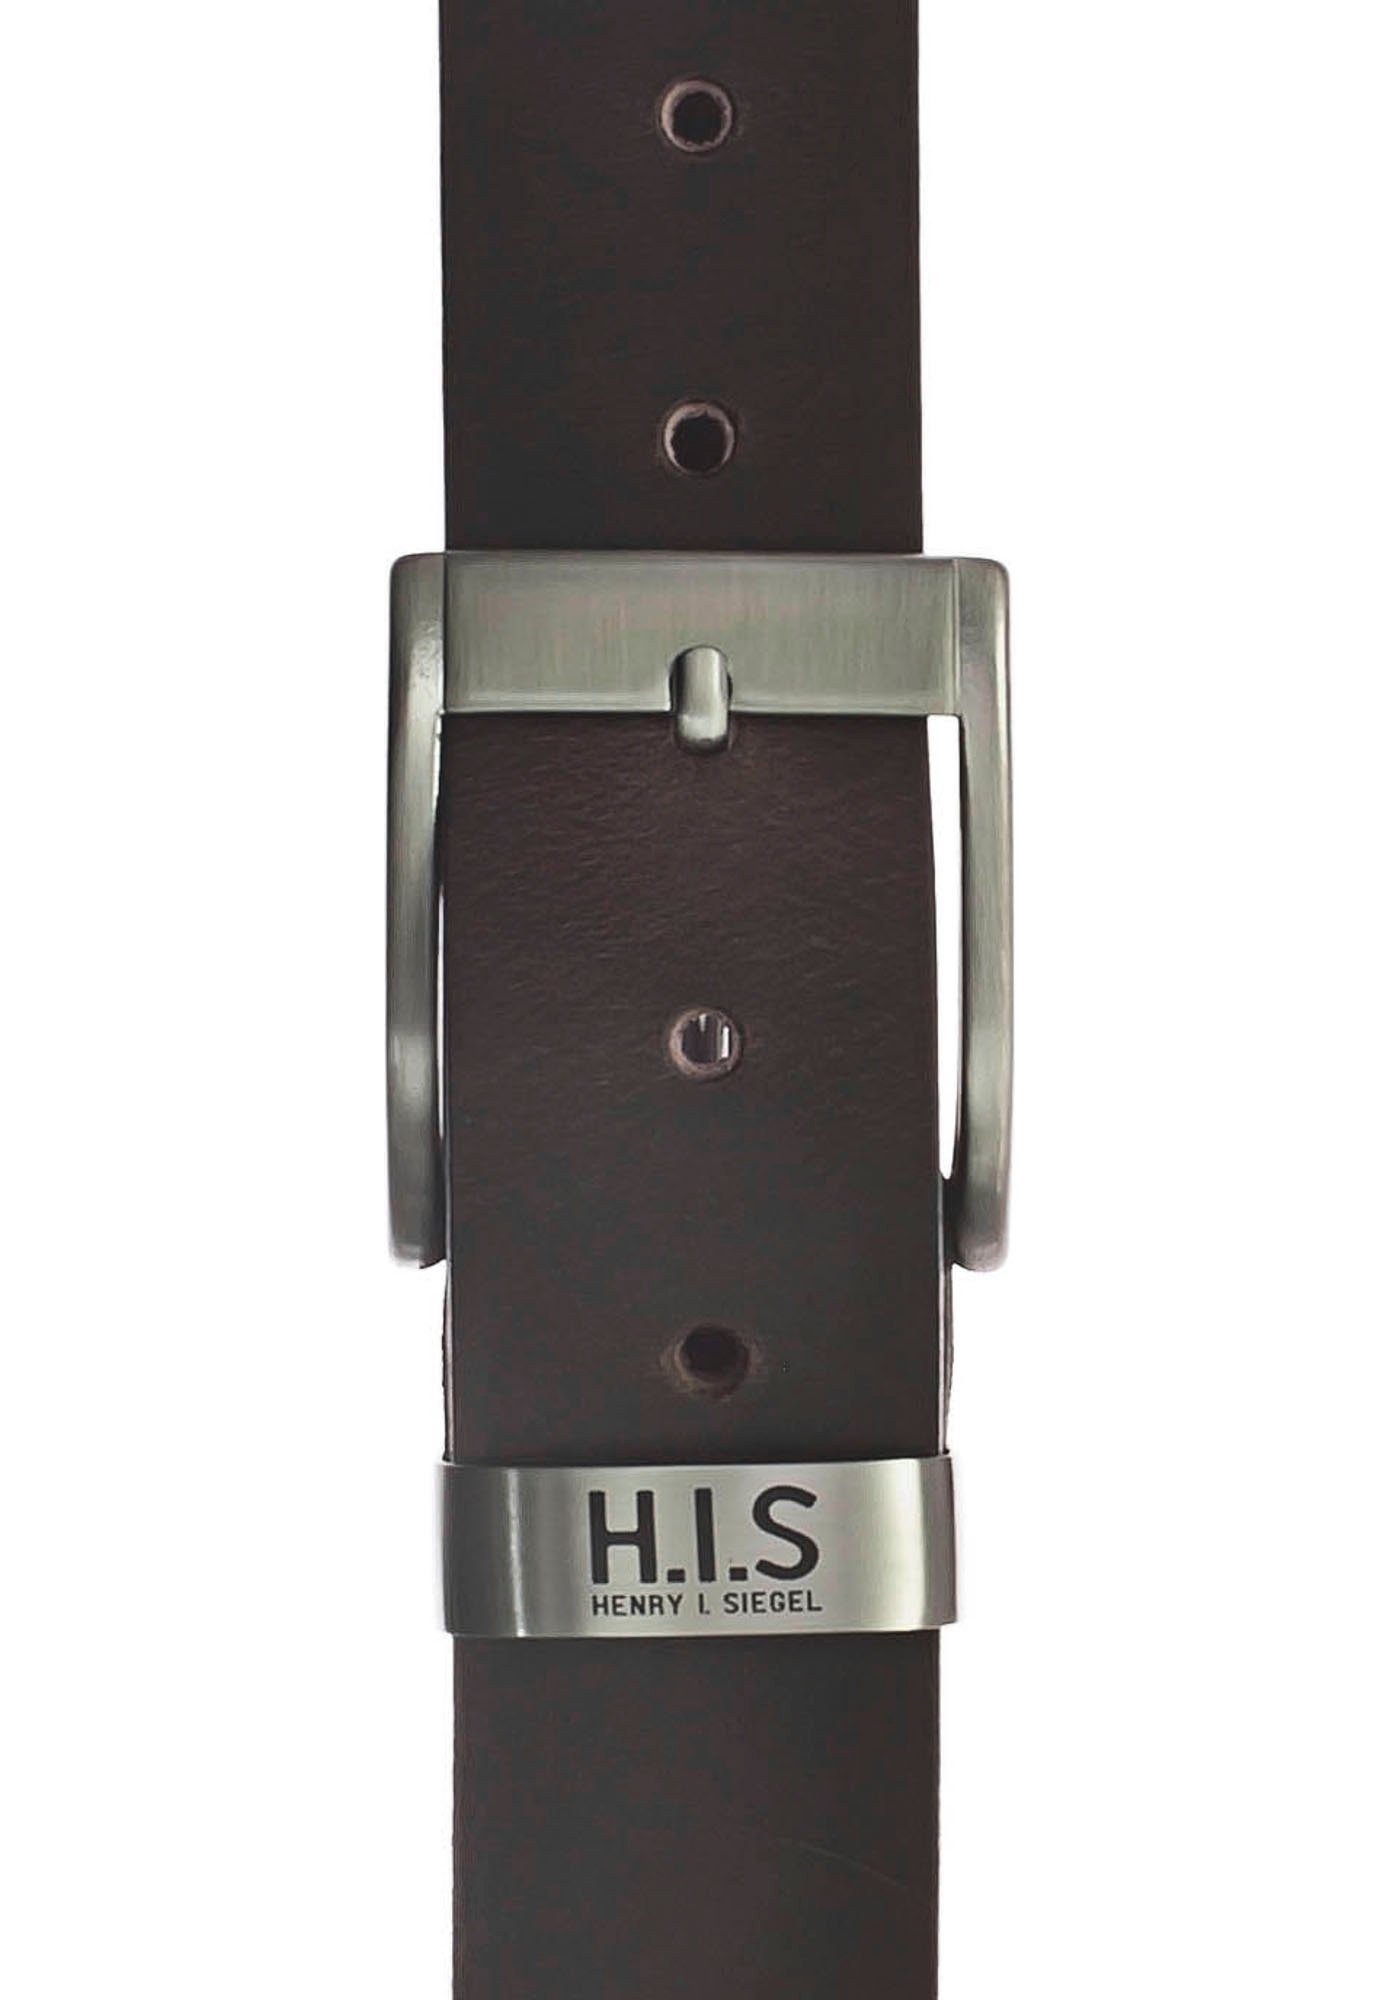 Vollrindledergürtel dunkelbraun und mit H.I.S LOGO Metallschlaufe Ledergürtel